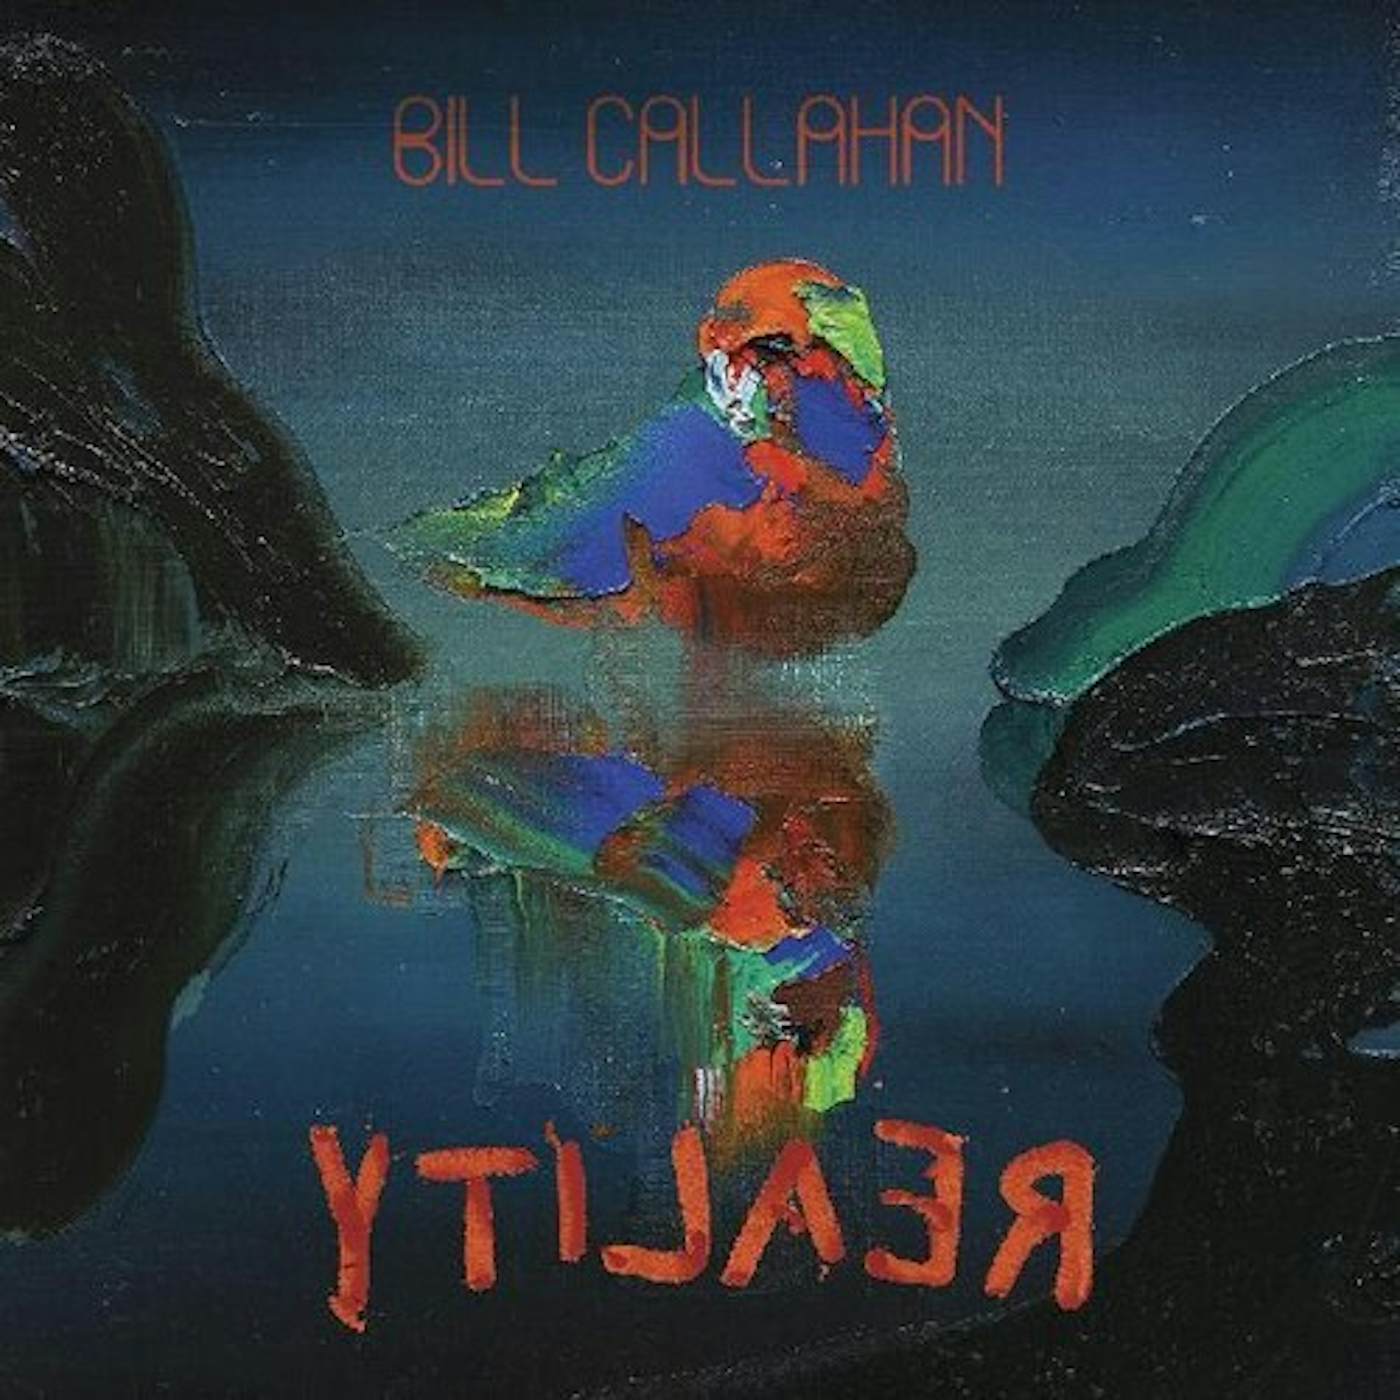 Bill Callahan TYILAER Vinyl Record